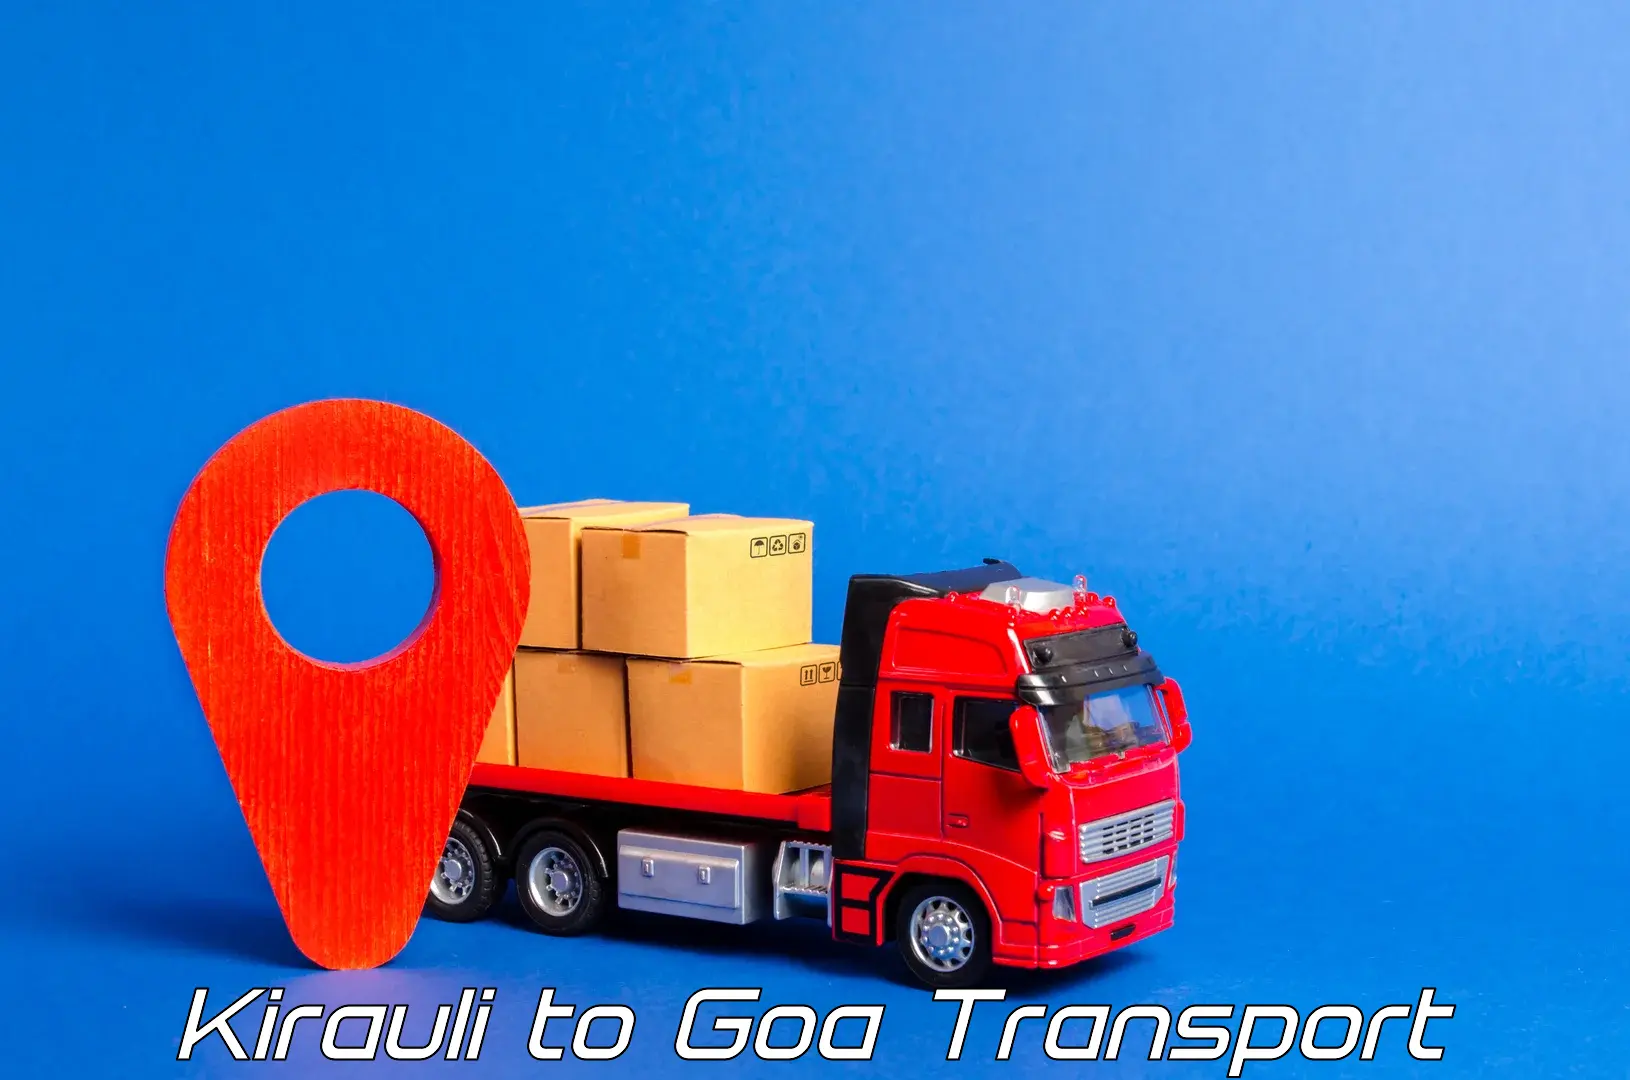 Bike transfer Kirauli to NIT Goa